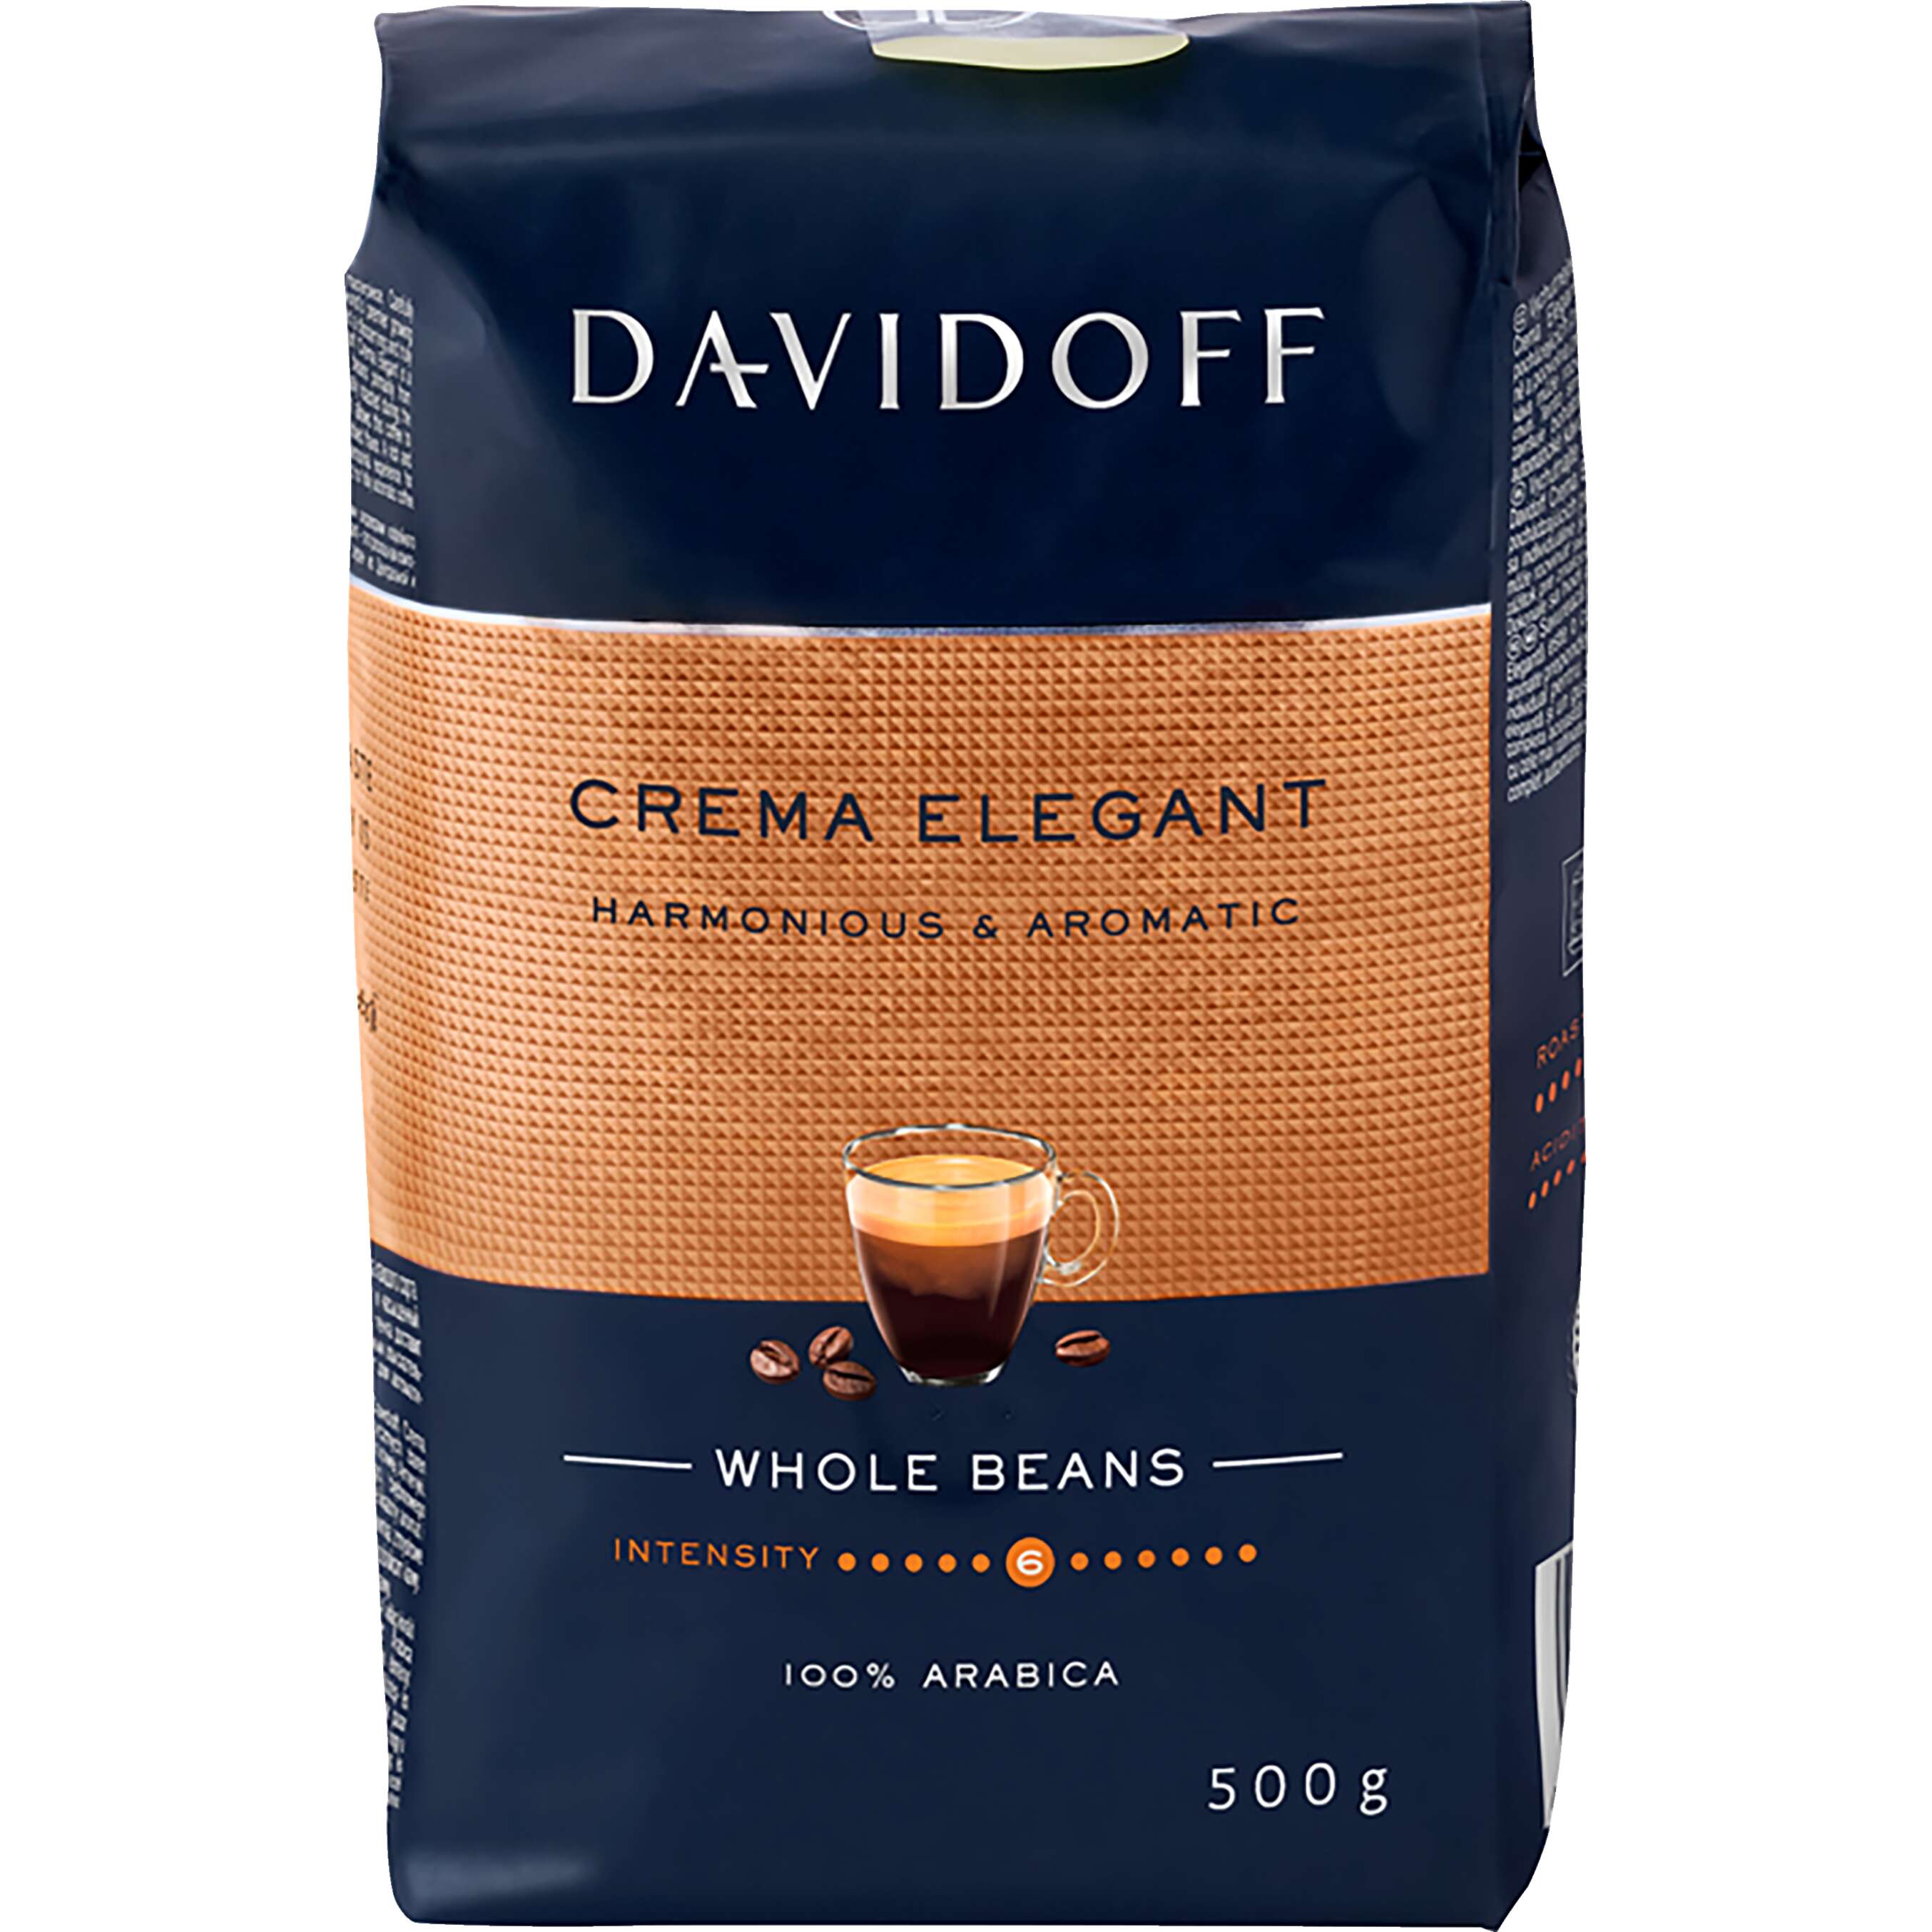 Zobrazit nabídku Davidoff Zrnková káva